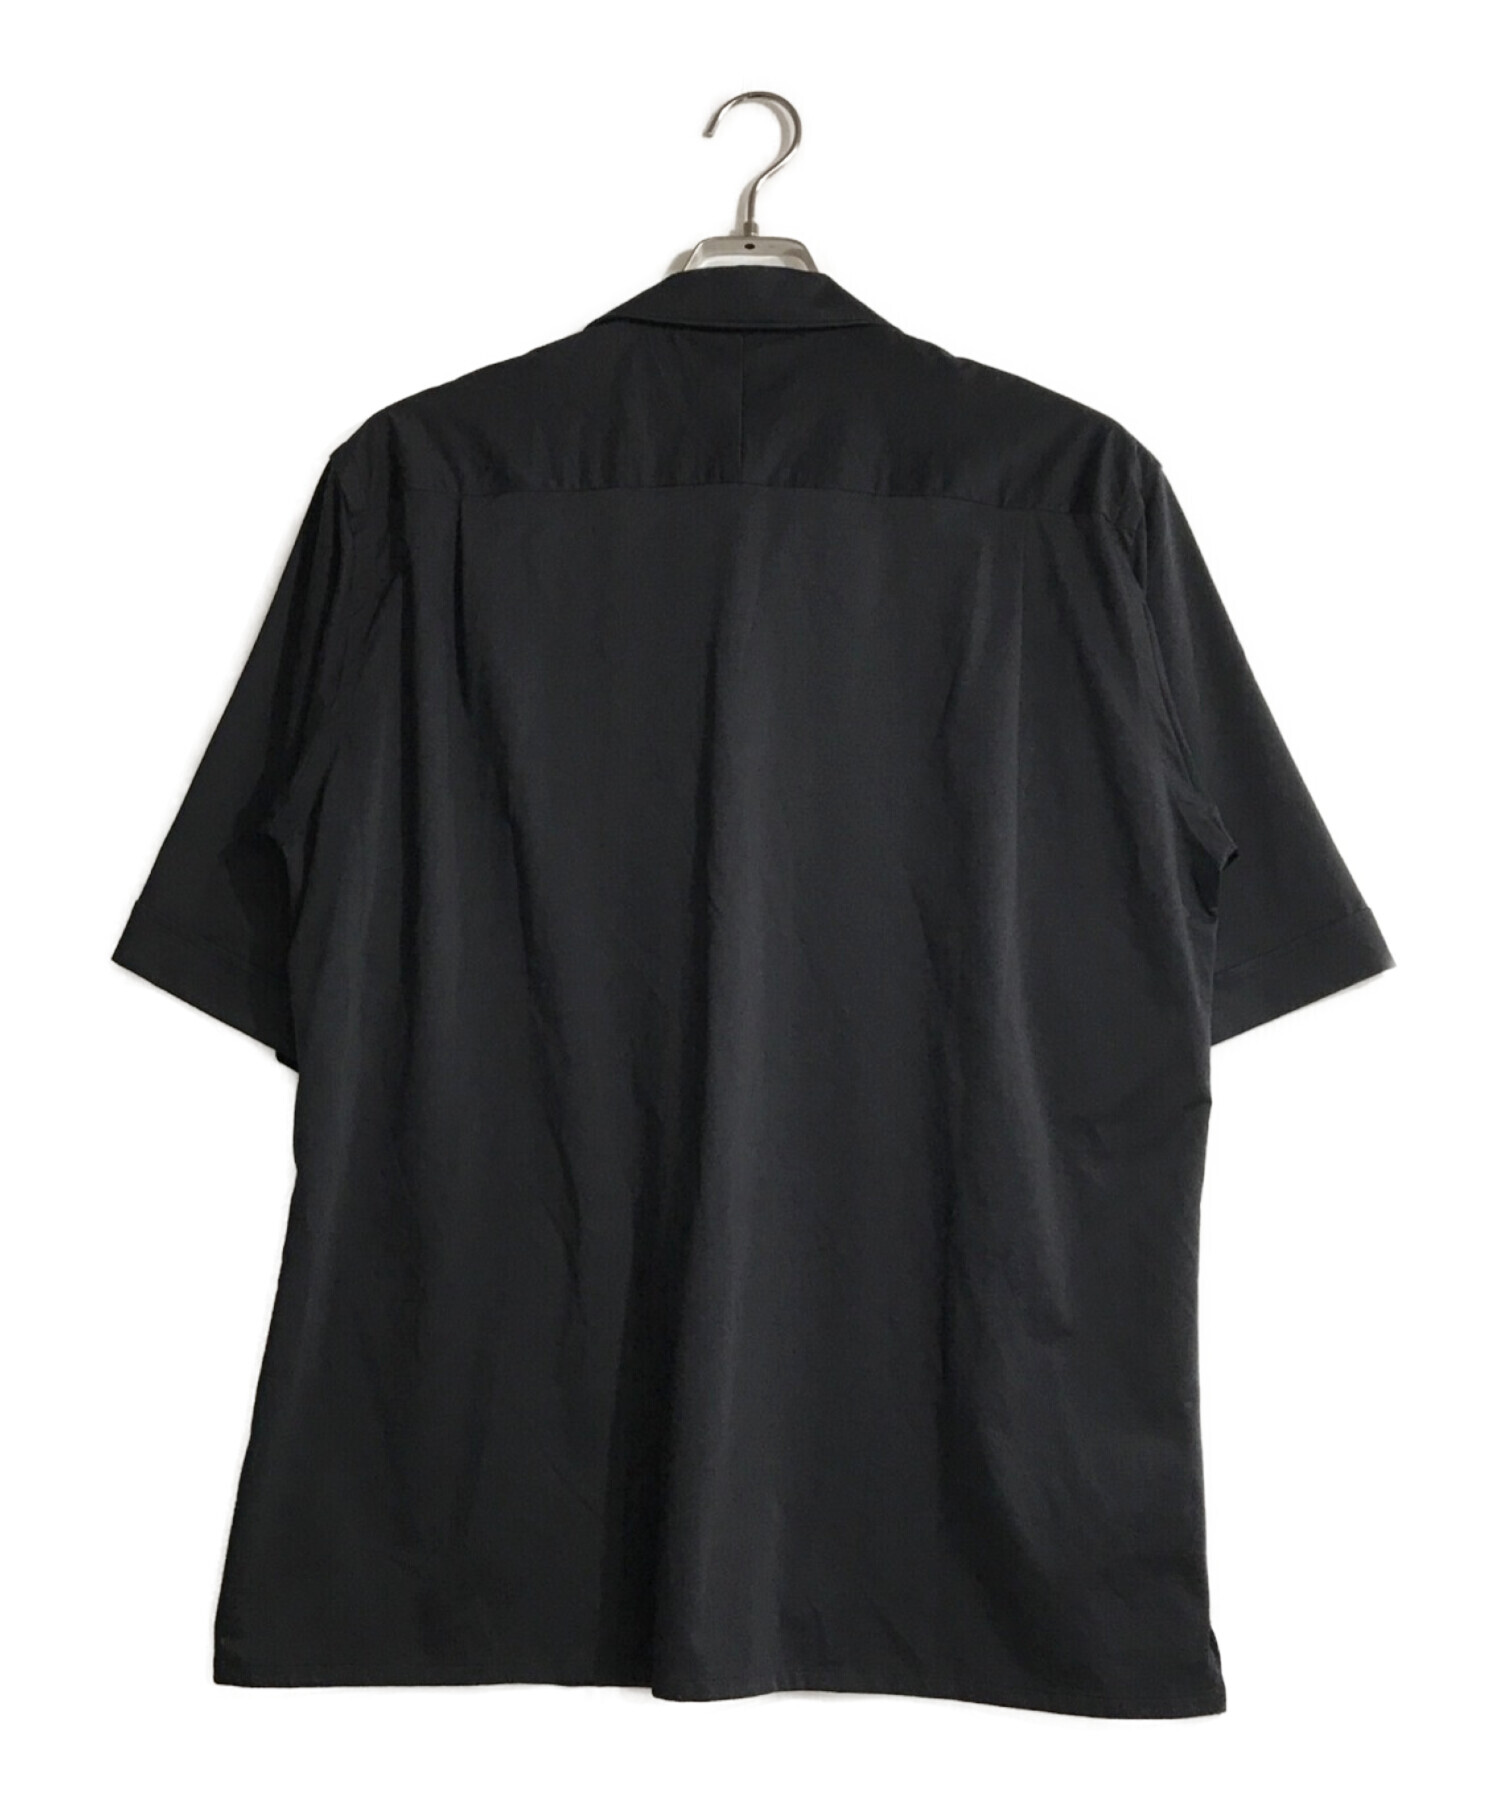 低価特価rovtski オープンカラーシャツ 黒 新品未使用タグ付き シャツ